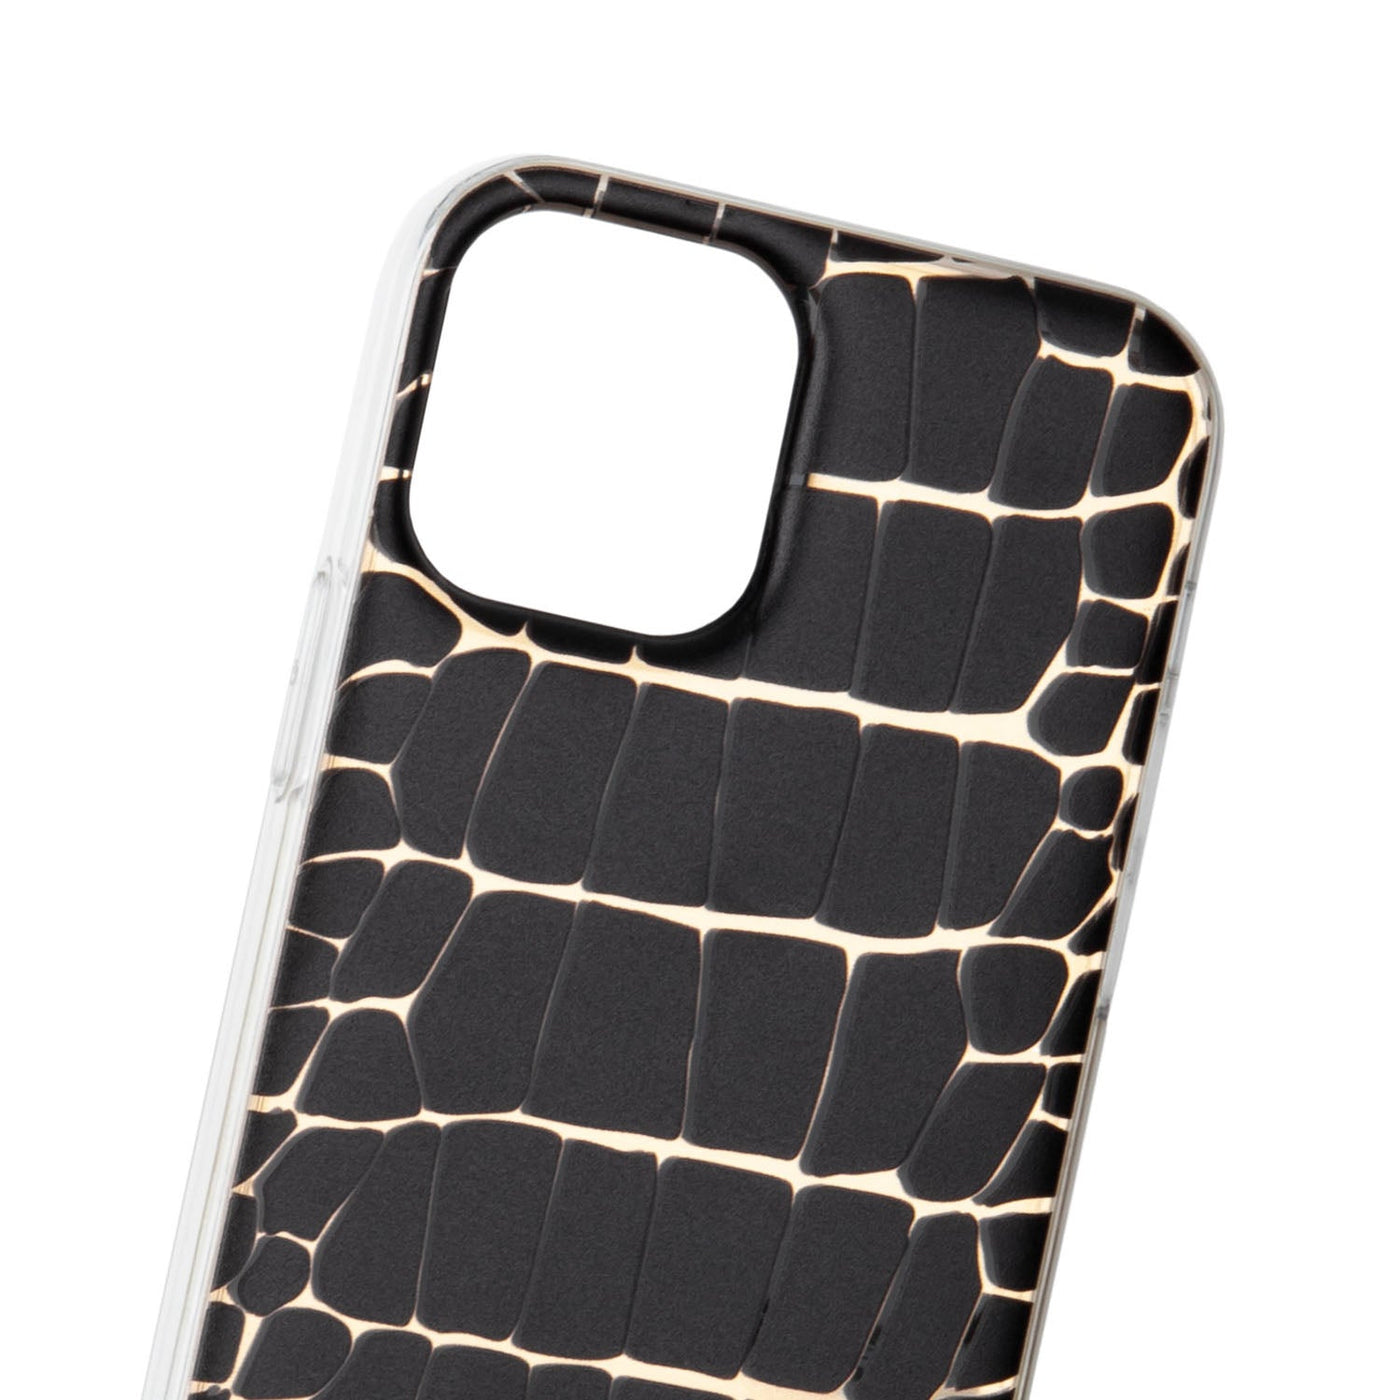 12 / 12 pro smartphone case - accessoires smartphone #couleur_noir